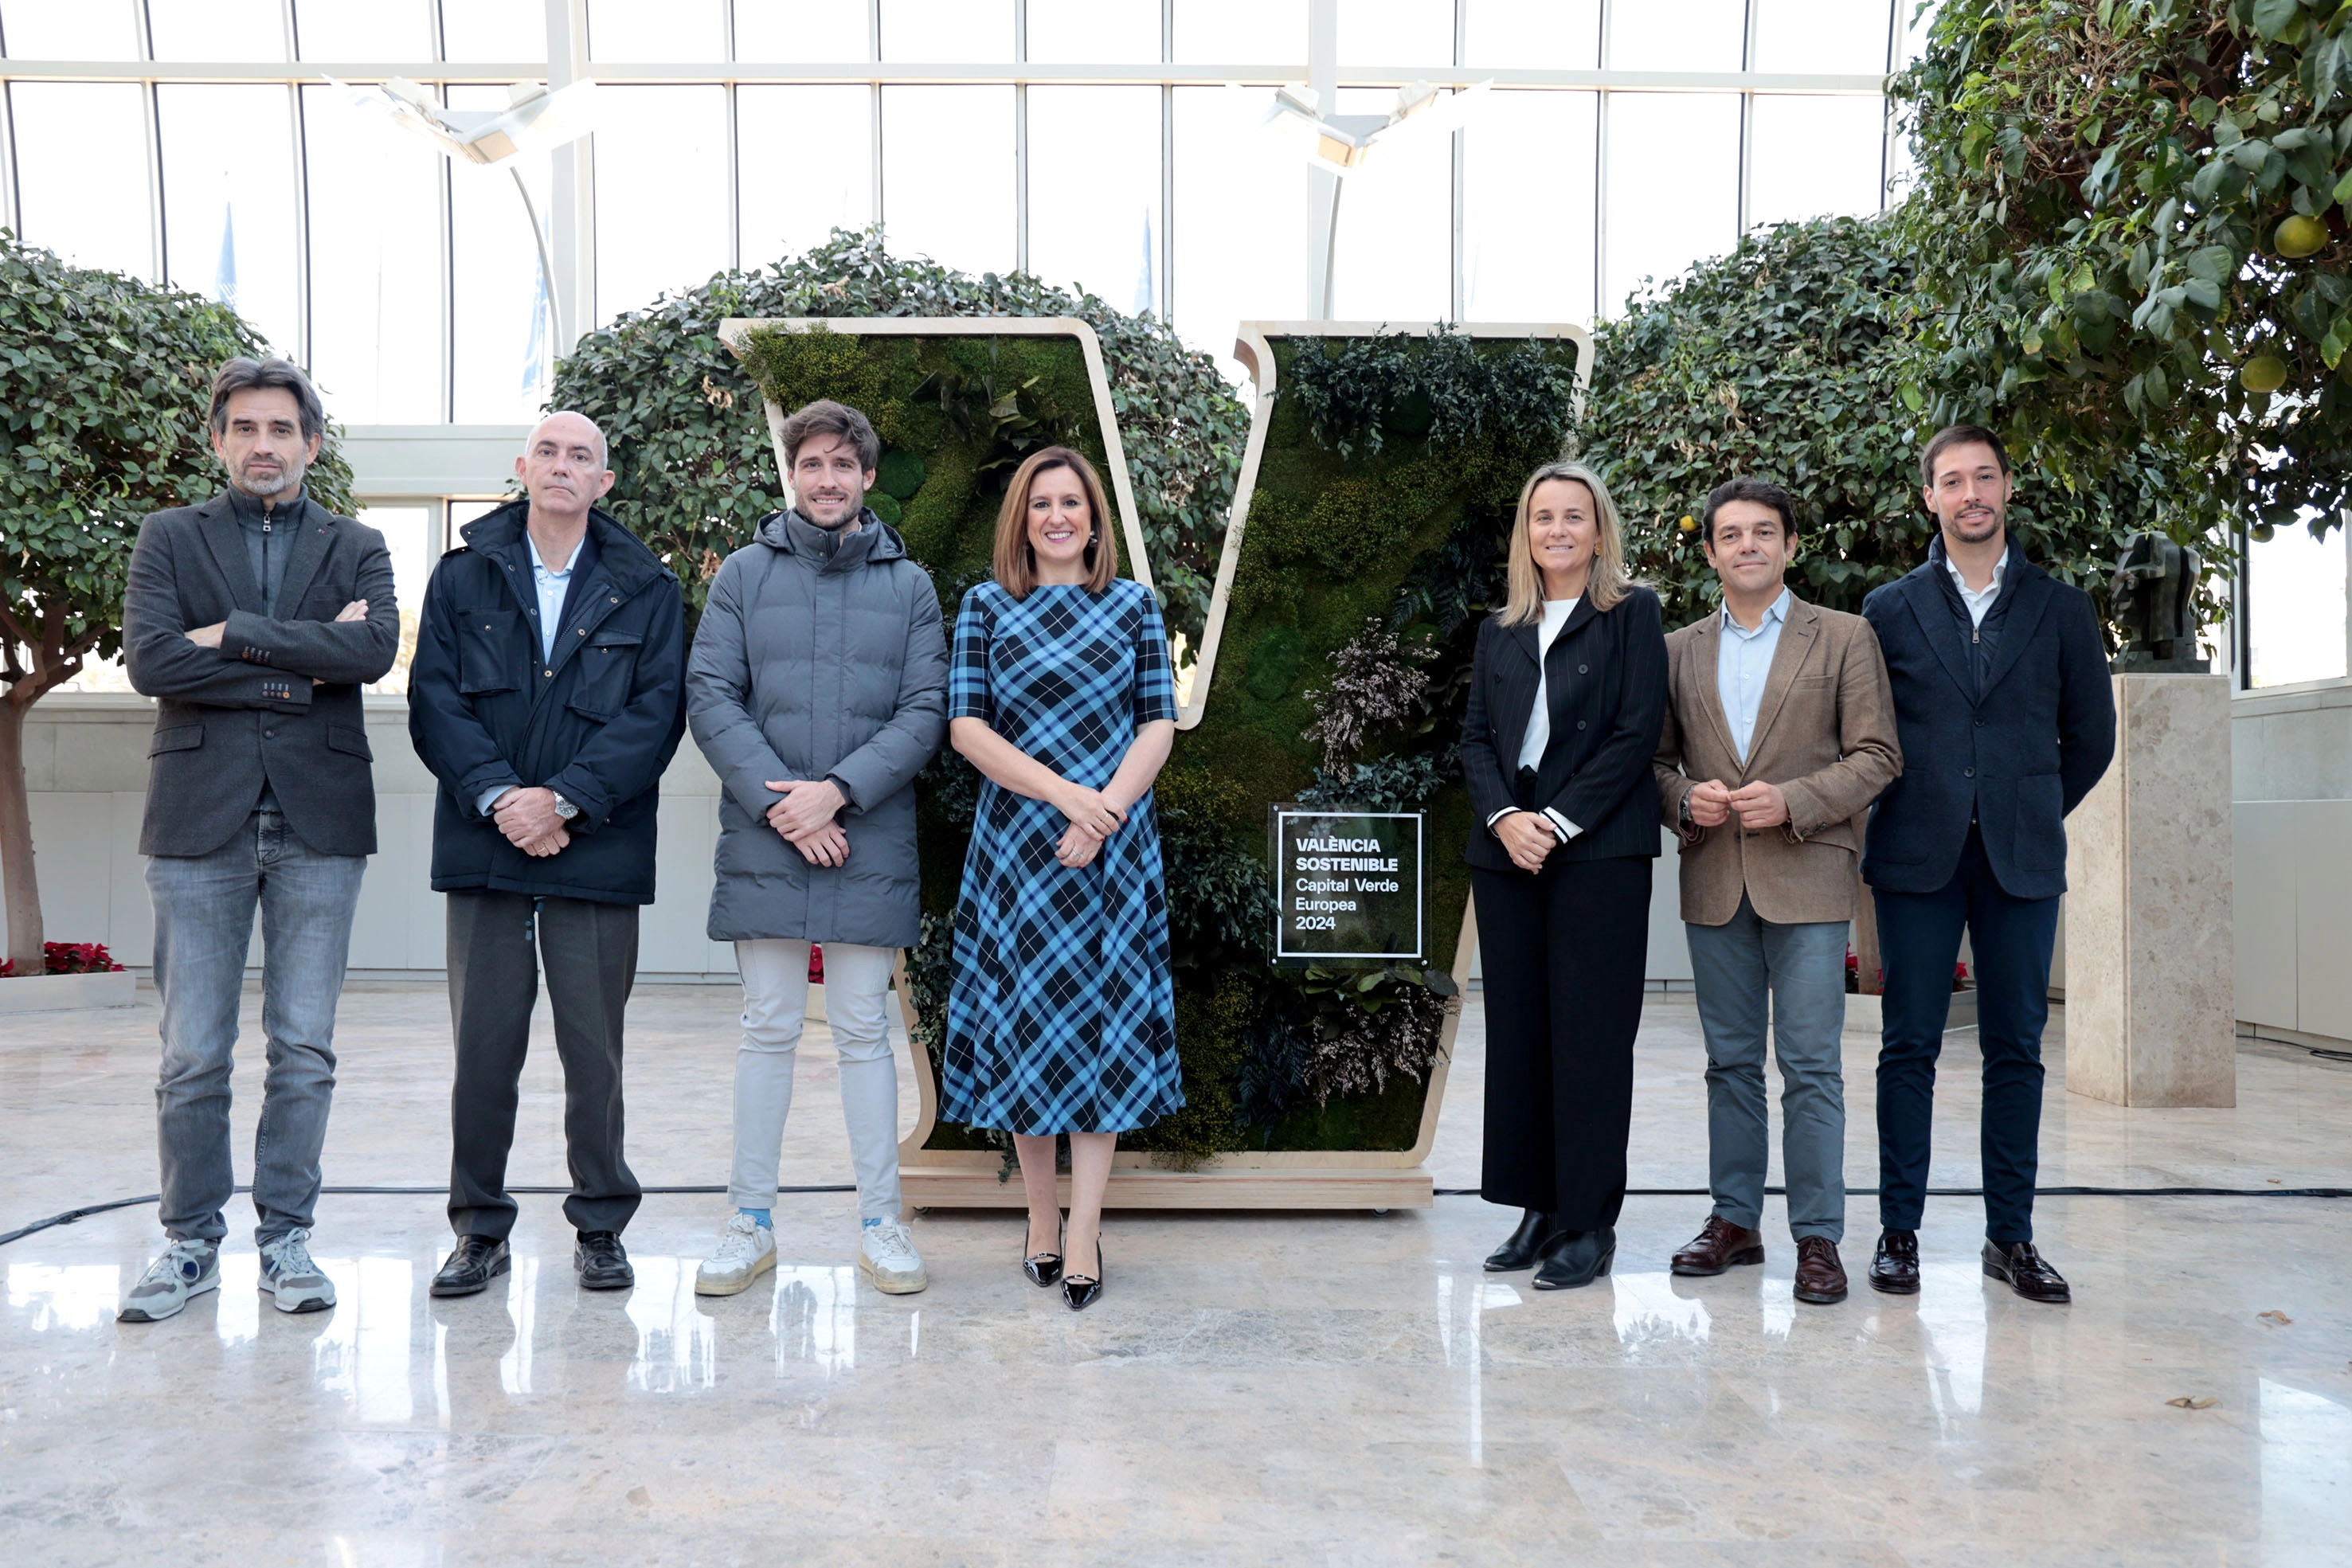 Fotografia amb l'alcaldessa Mª José Catalá i els responsables de la capitalitat europea verda de València